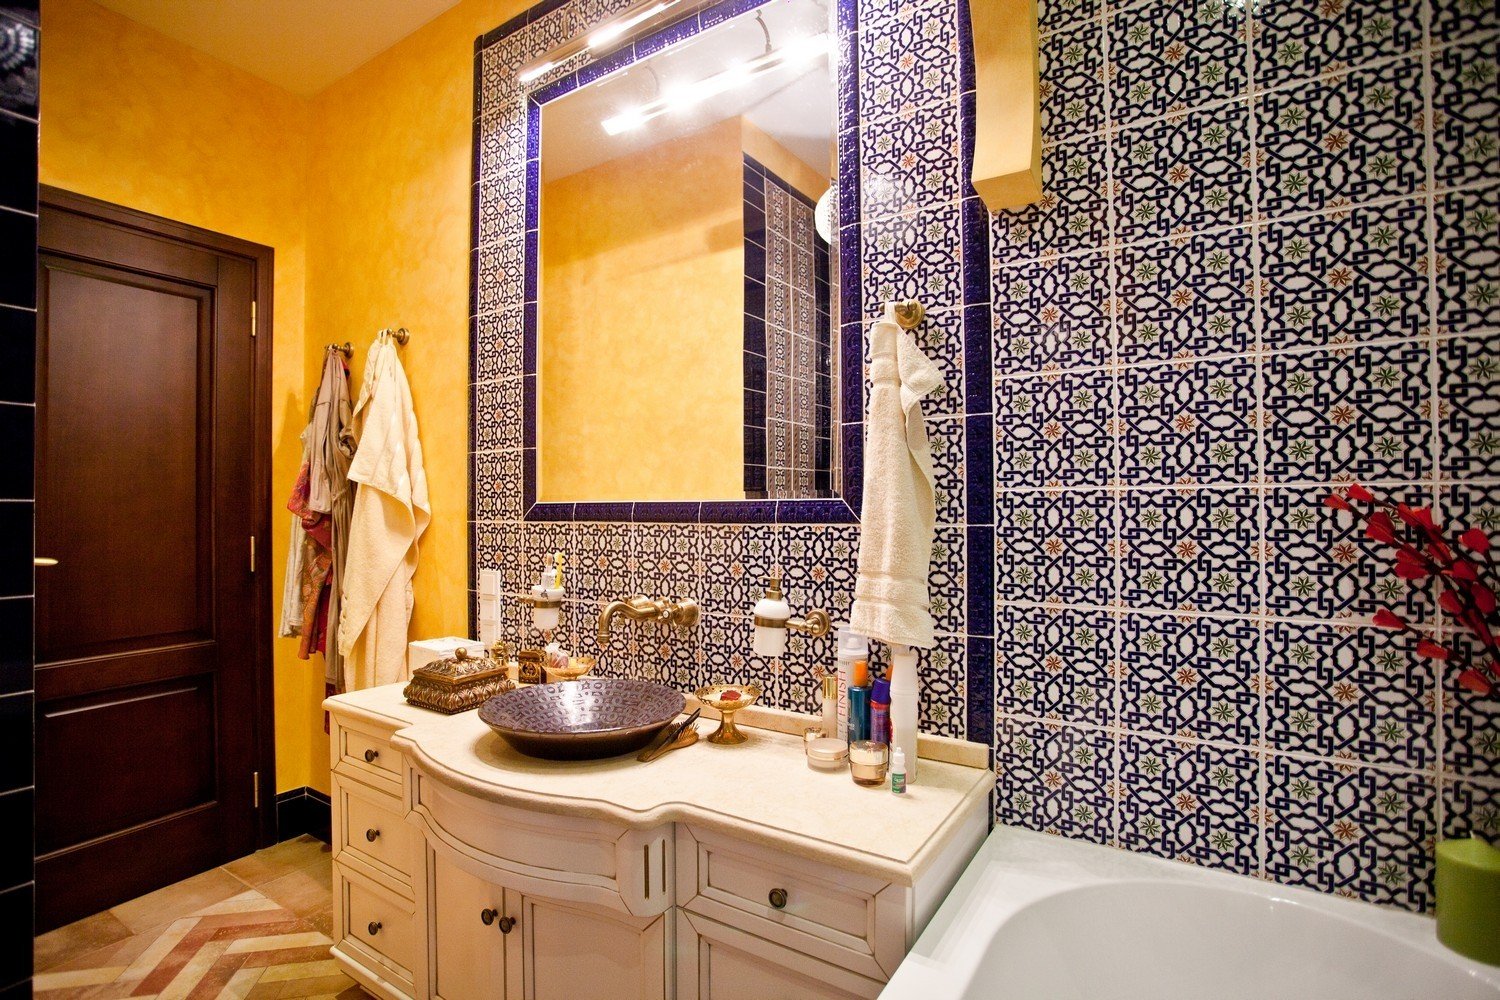 Марокканская плитка: калейдоскоп узоров в вашей ванной (45 фото) | дизайн и интерьер ванной комнаты